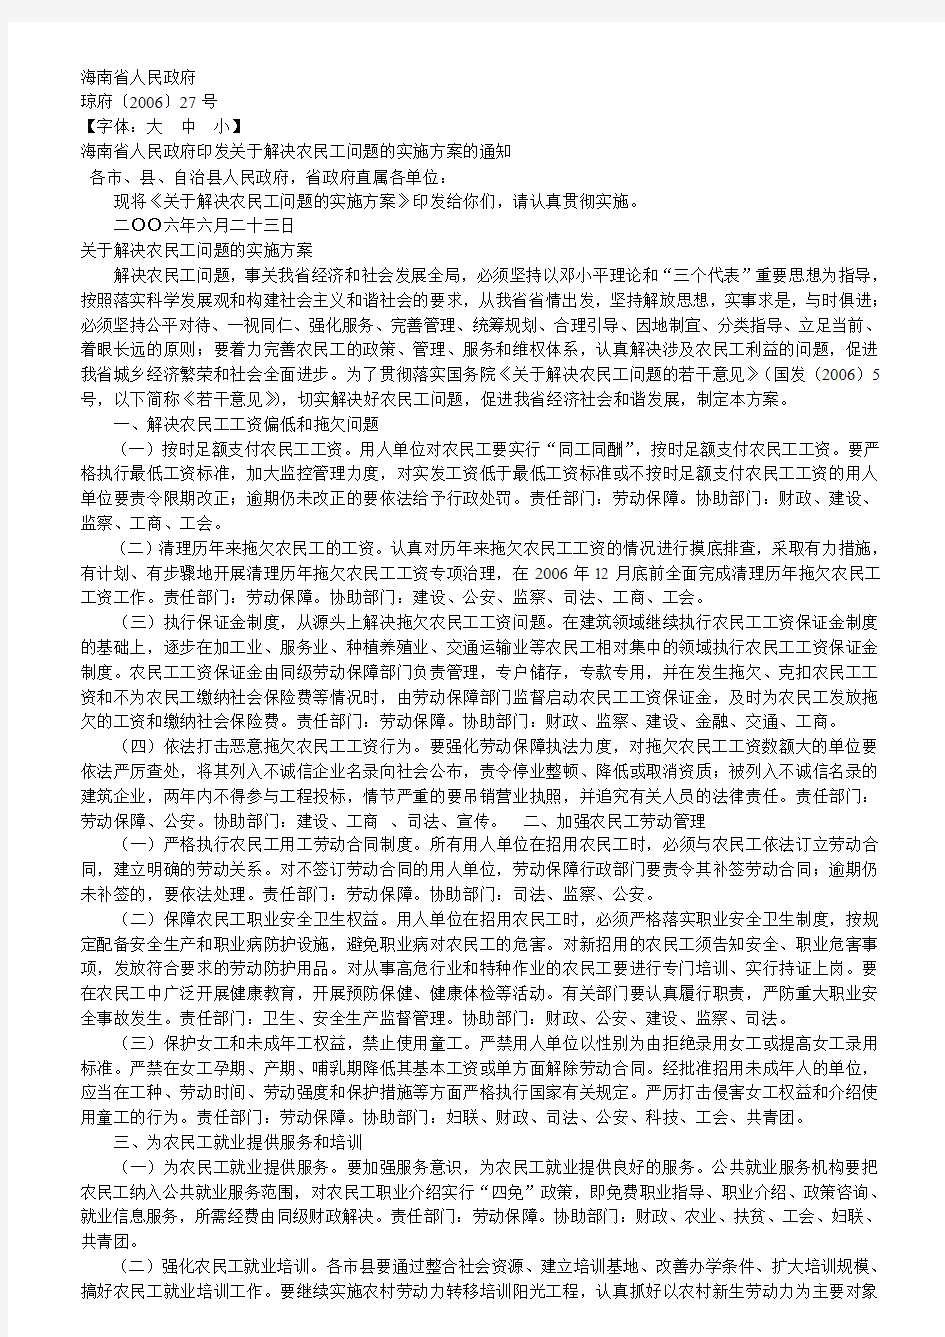 海南省人民政府印发关于解决农民工问题的实施方案的通知